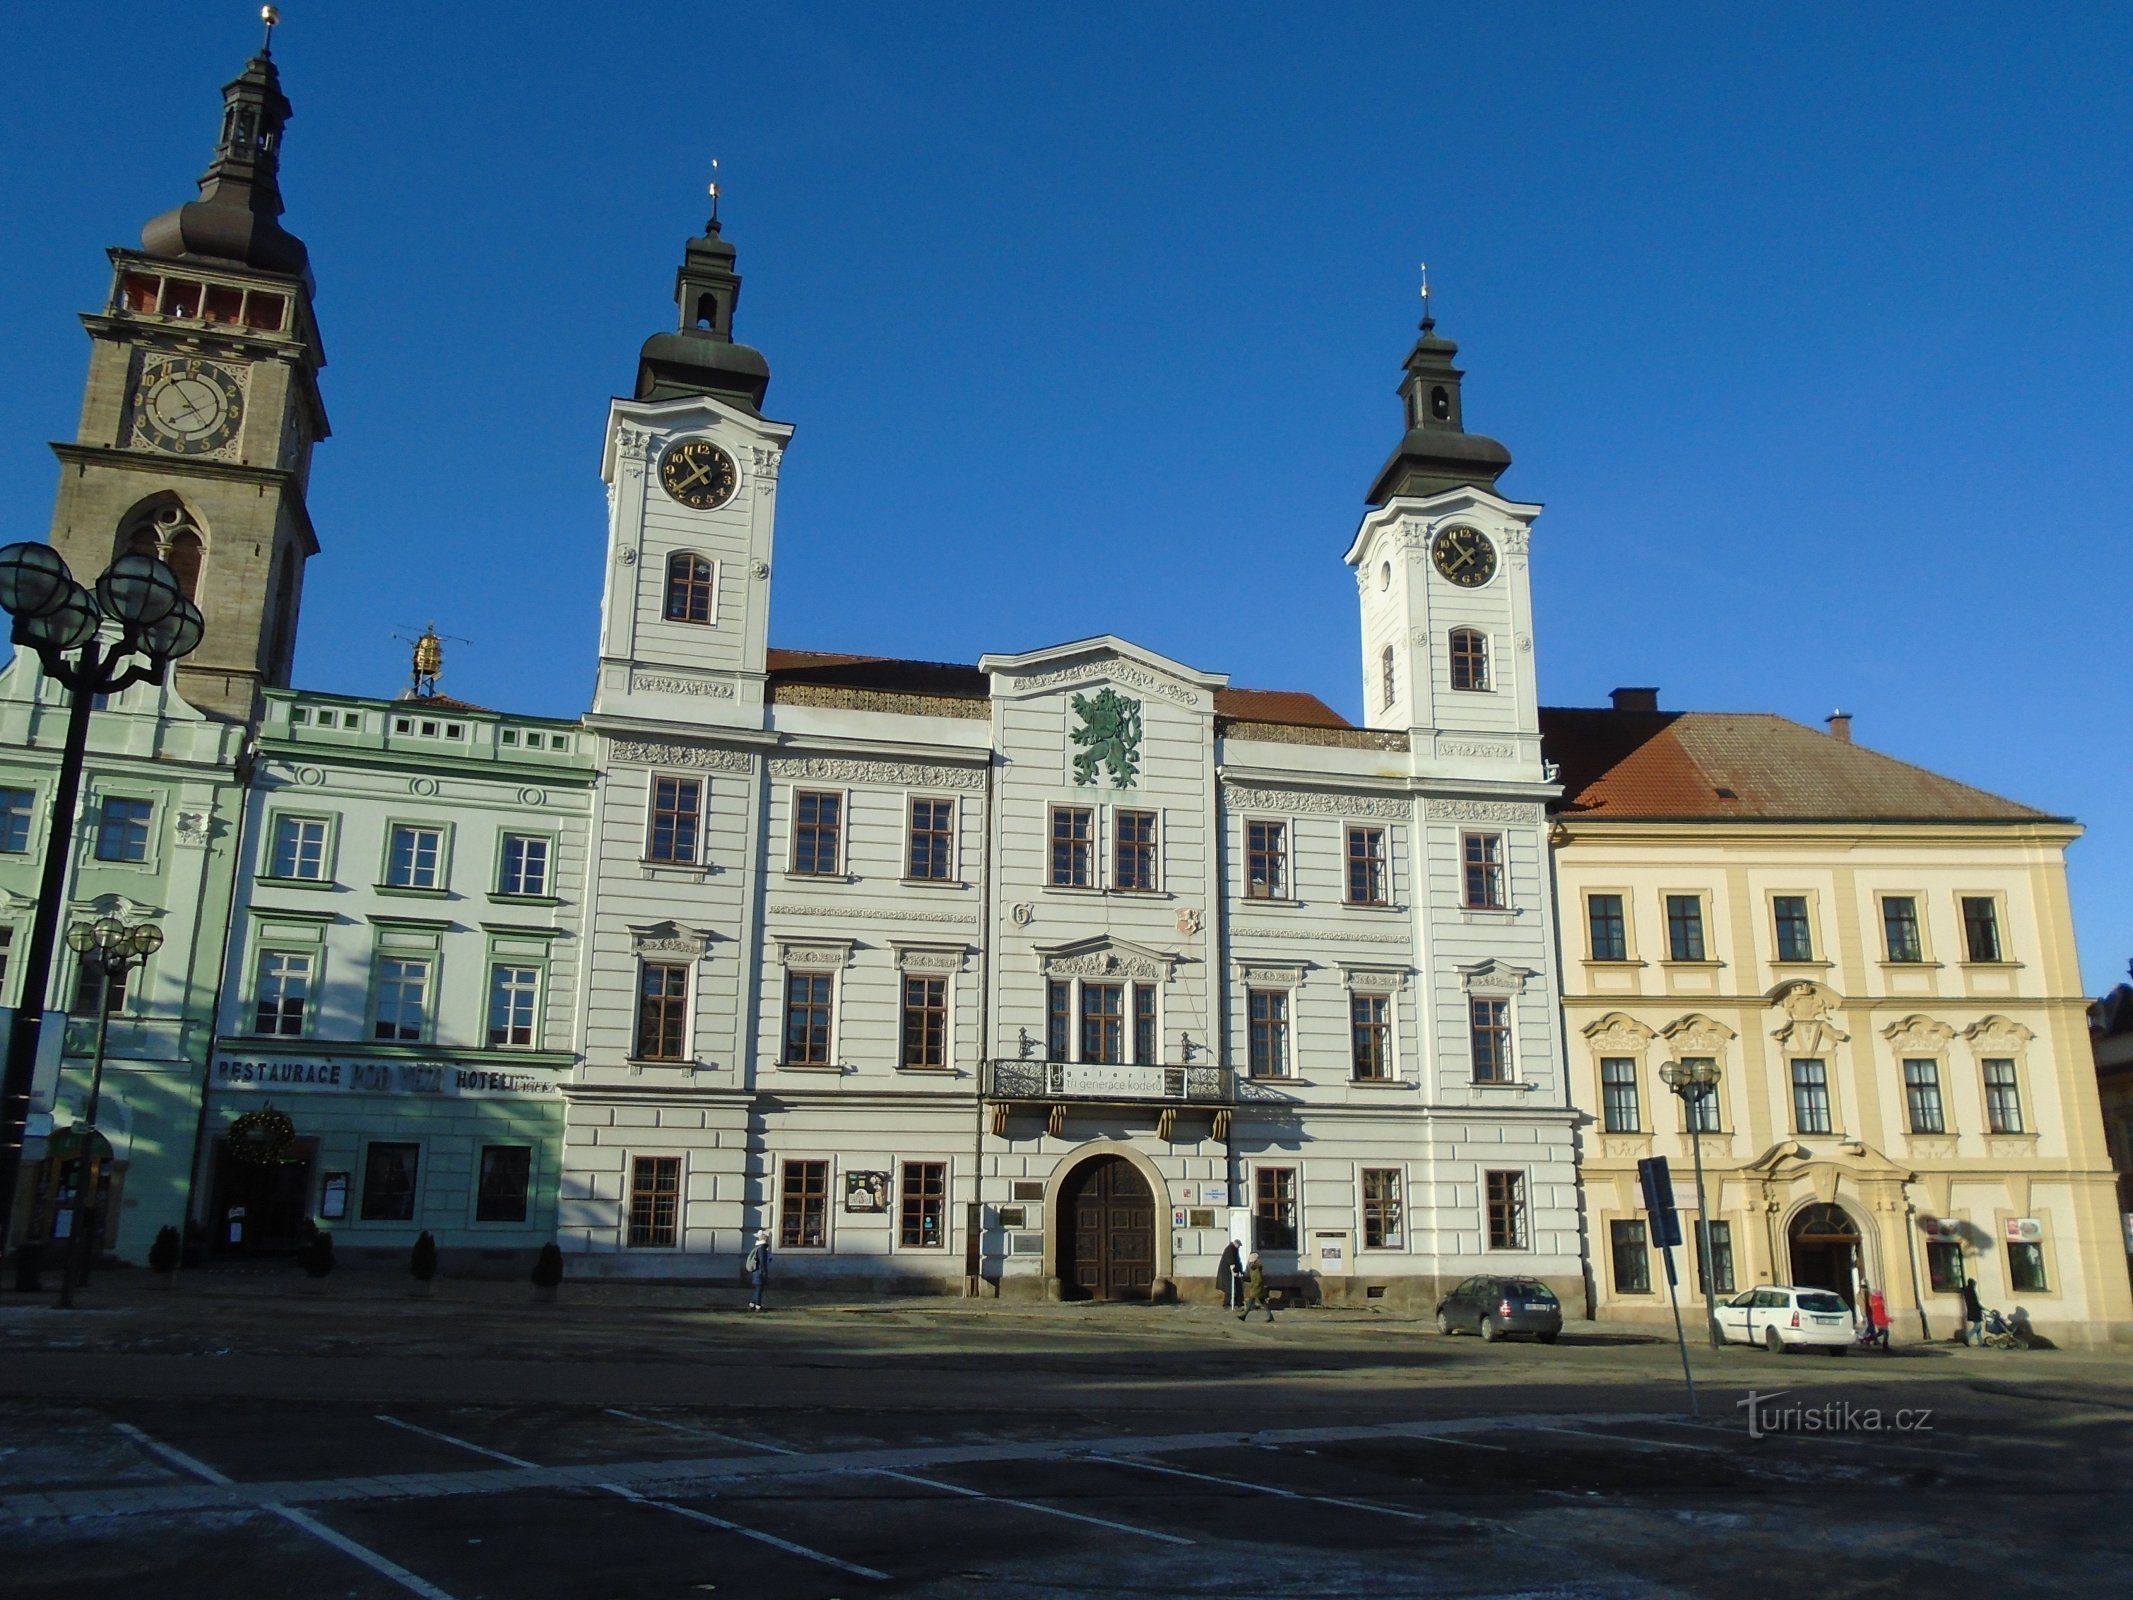 Velké náměstí čp. 1 (Hradec Králové, 10.12.2017)